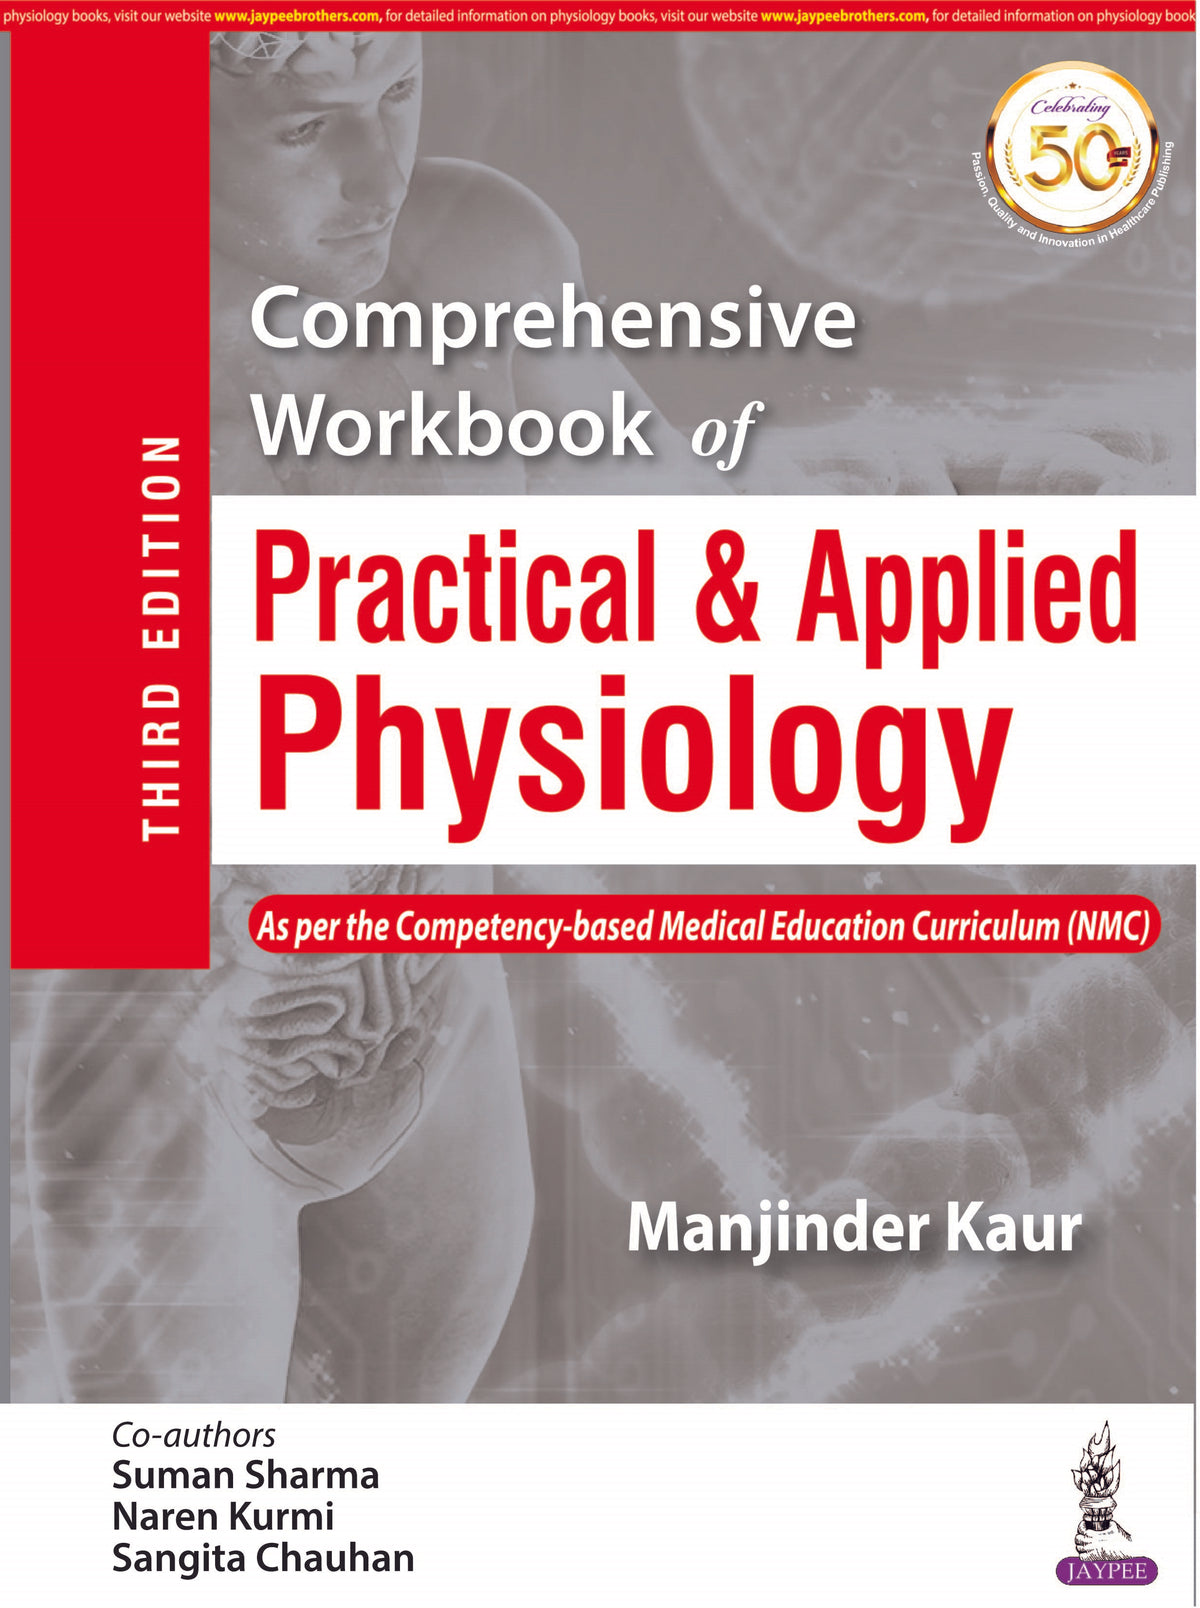 COMPREHENSIVE WORKBOOK FOR PRACTICAL PHYSIOLOGY,3/E,MANJINDER KAUR